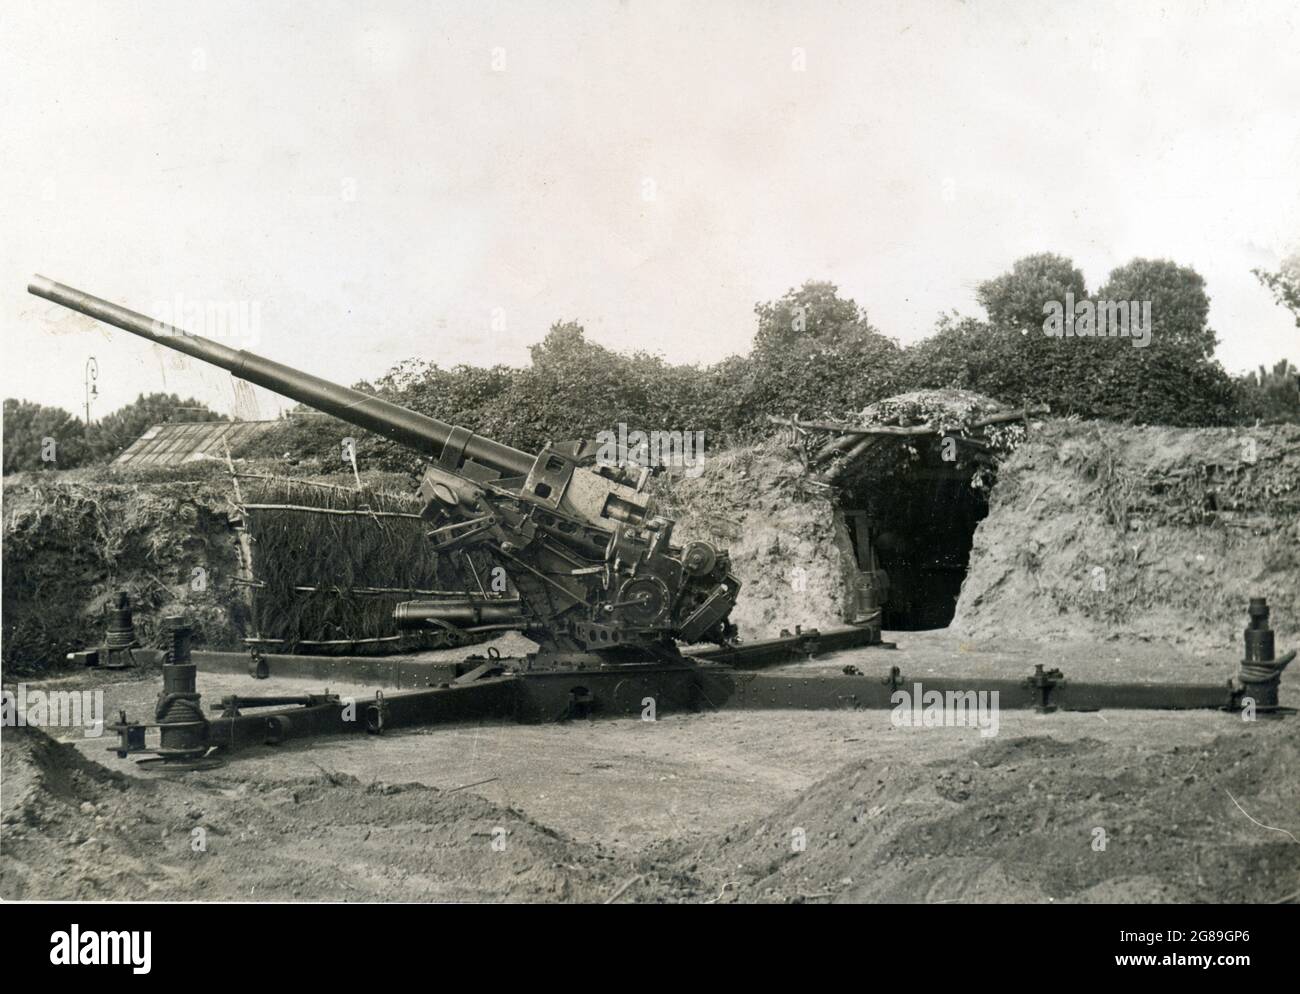 WW2 - WWII FLAK - 19 esima legione milizia artiglieria contraerei - Coroglio, Napoli, Italia Stock Photo